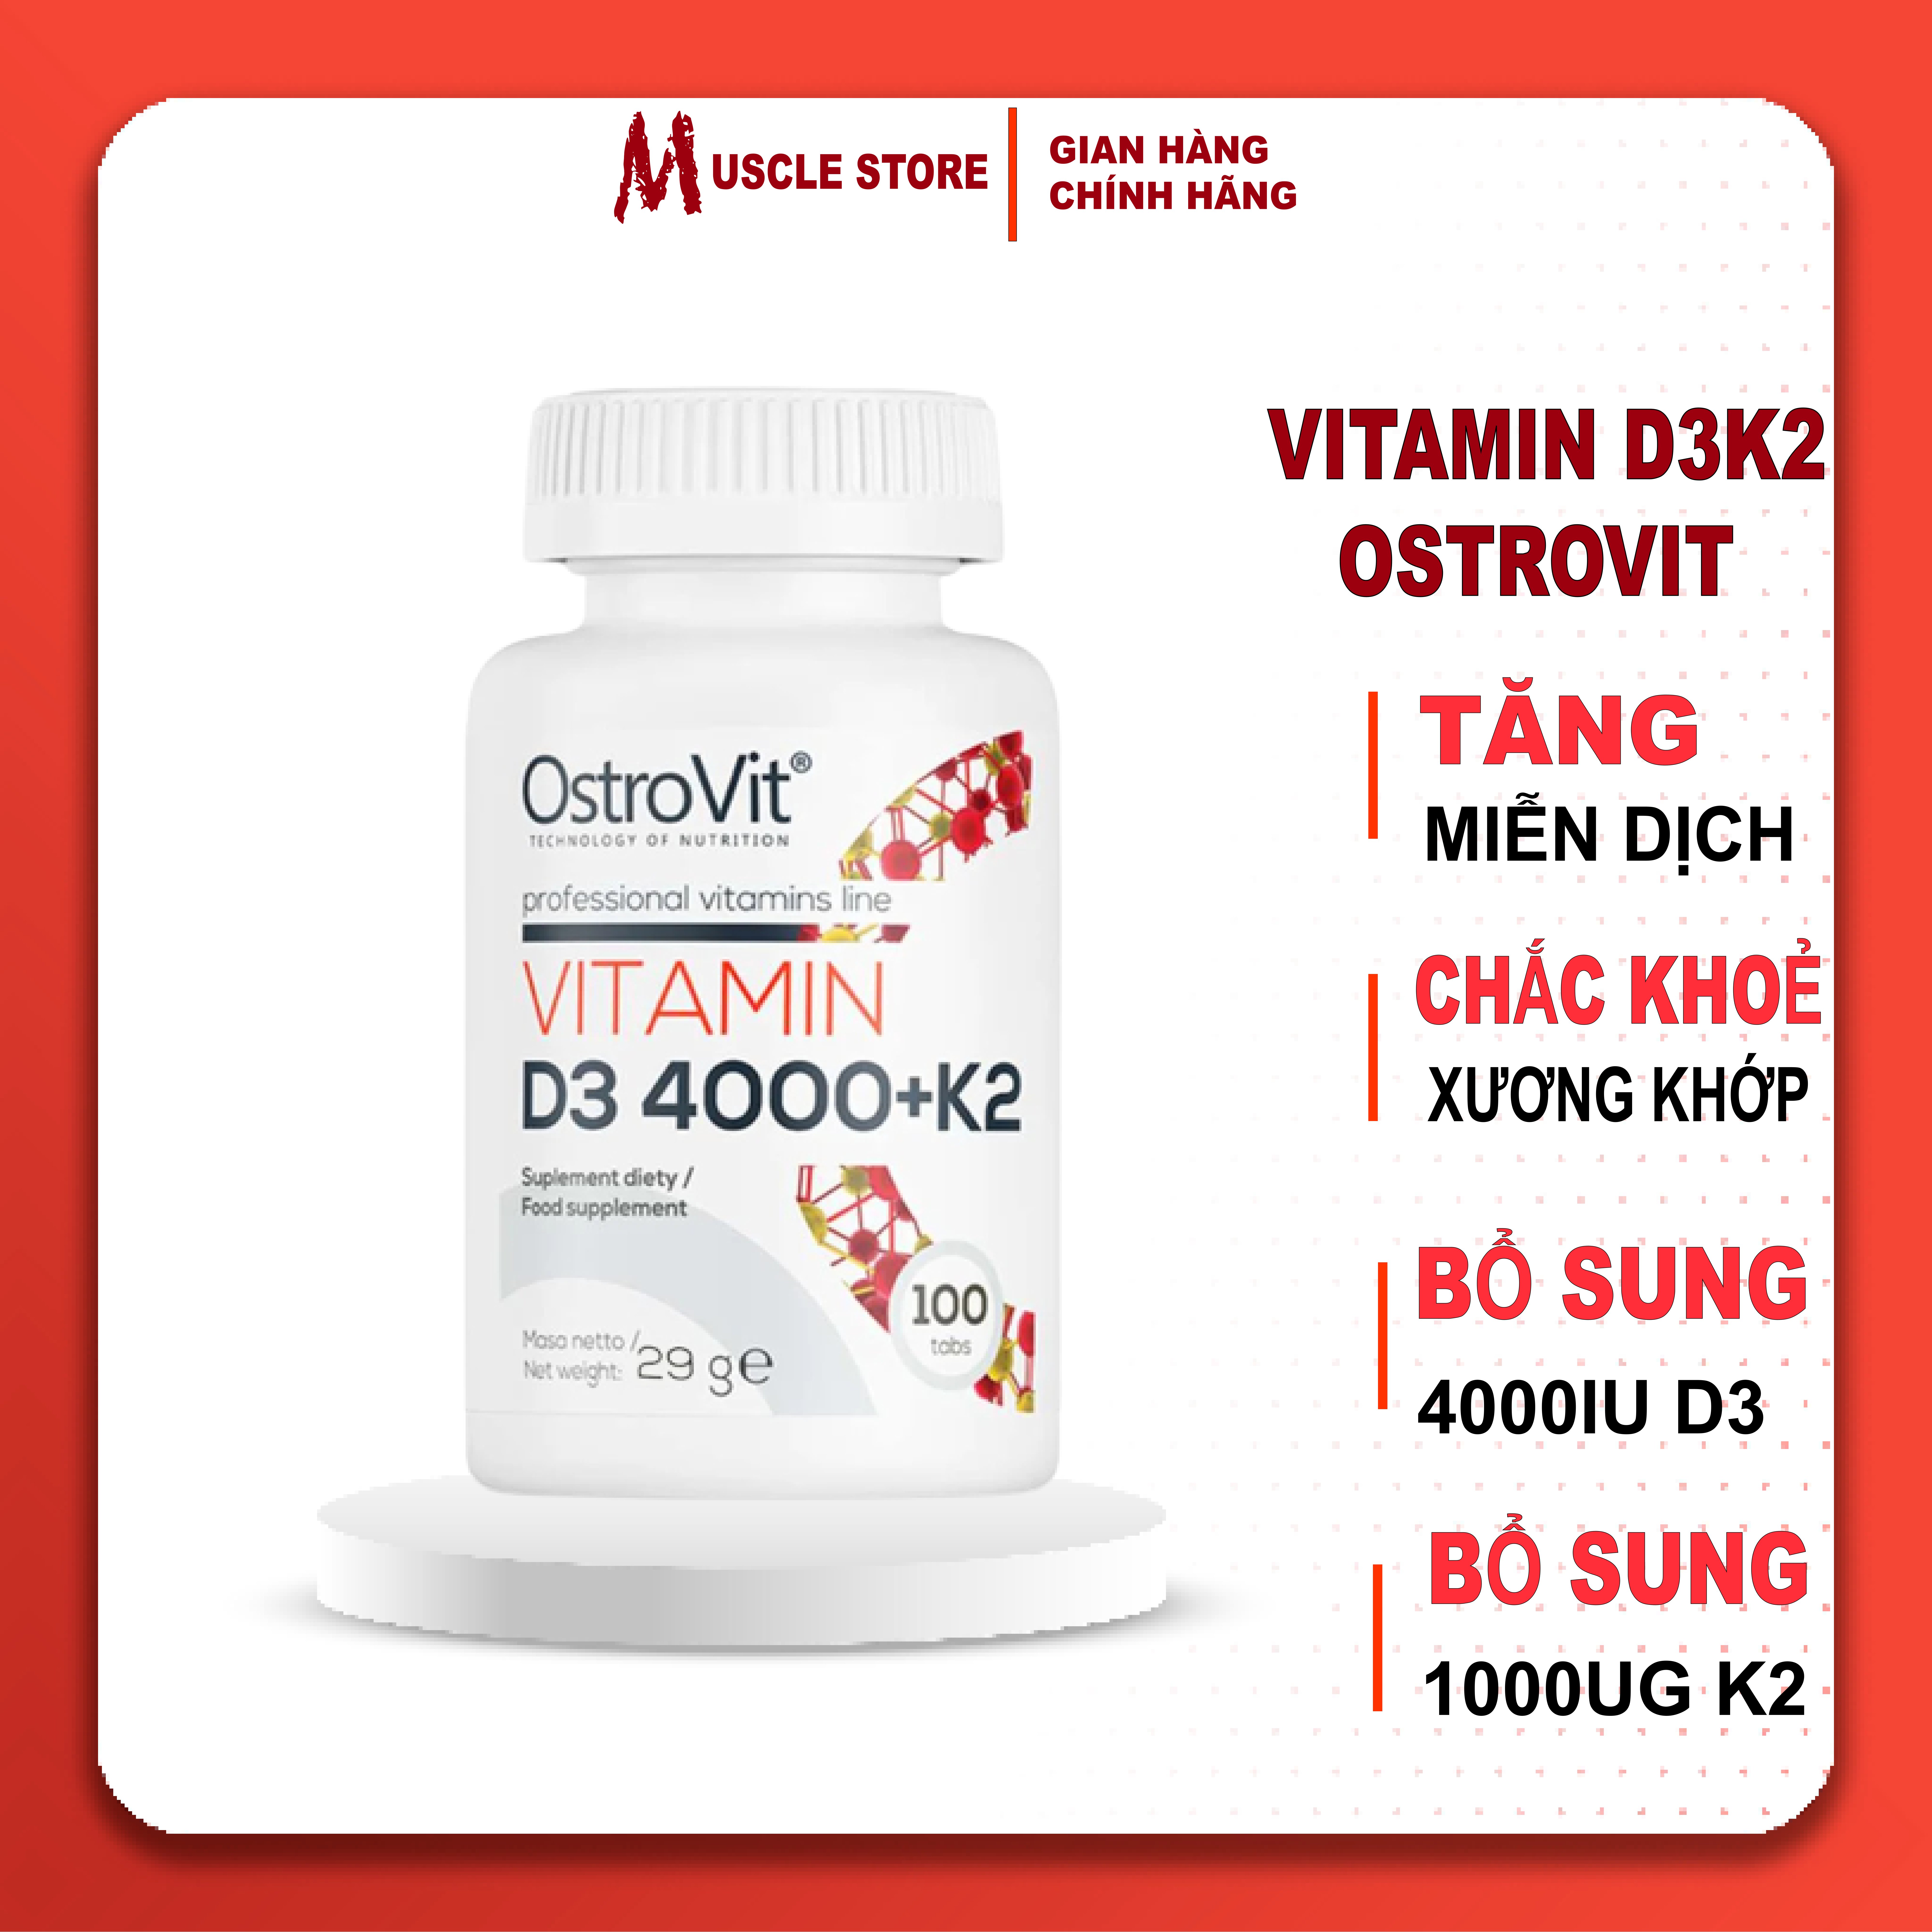 OstroVit Vitamin D3 4000 + K2 (100 viên), Hỗ Trợ Hệ Miễn Dịch, Giúp Xương Răng Chắc Khỏe, Nhập Khẩu Ba Lan